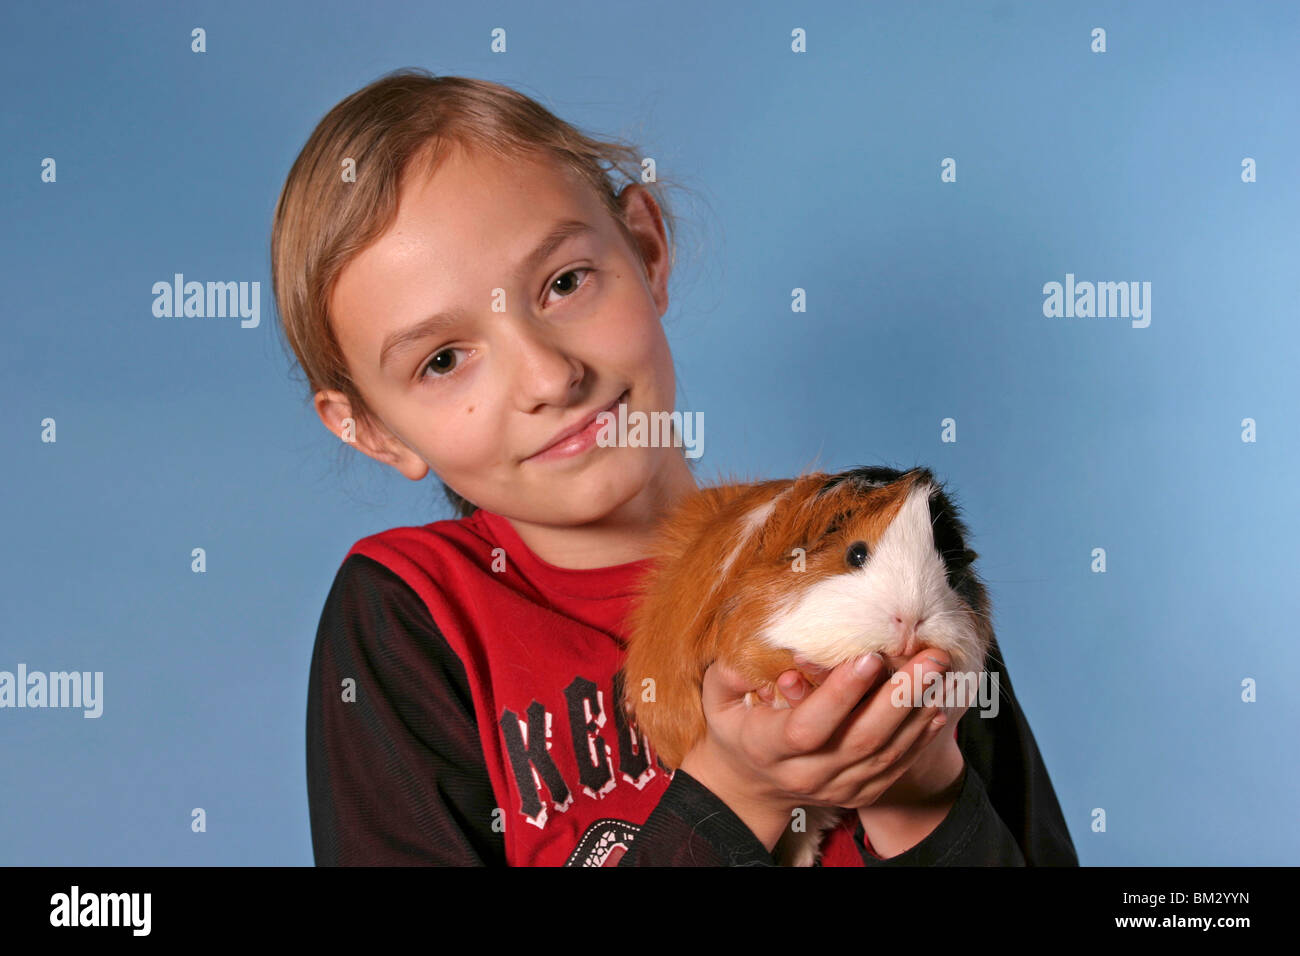 Meerschwein mit Kind / guinea pig & young girl Stock Photo